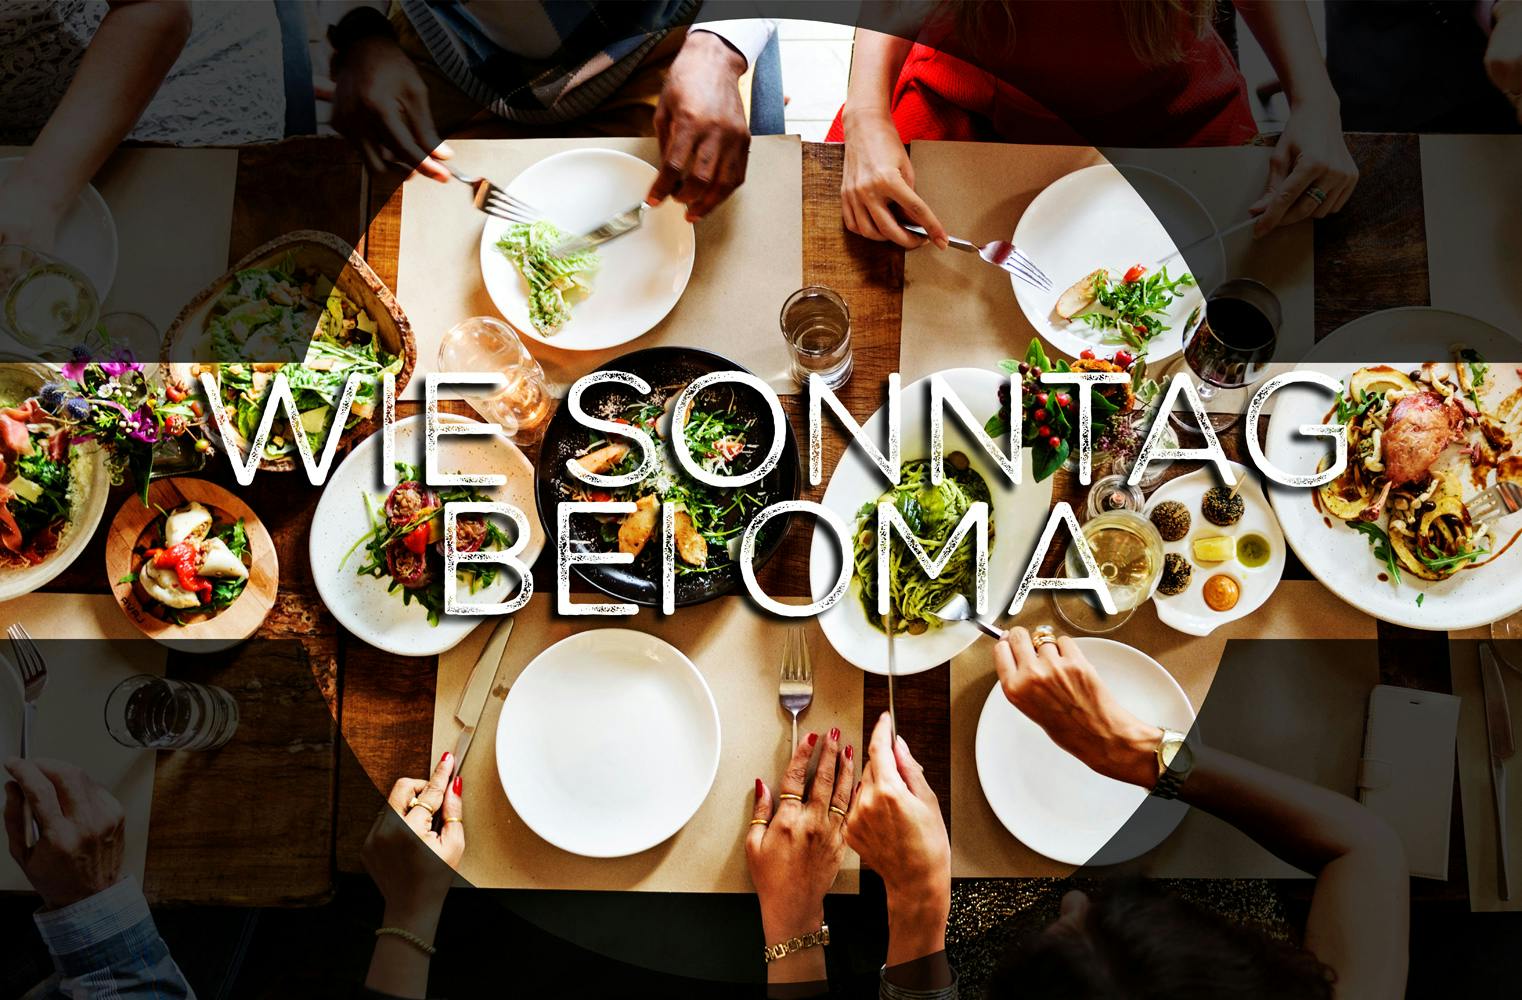 Dinner mit Freunden | gemeinsames Essen beim Themenabend